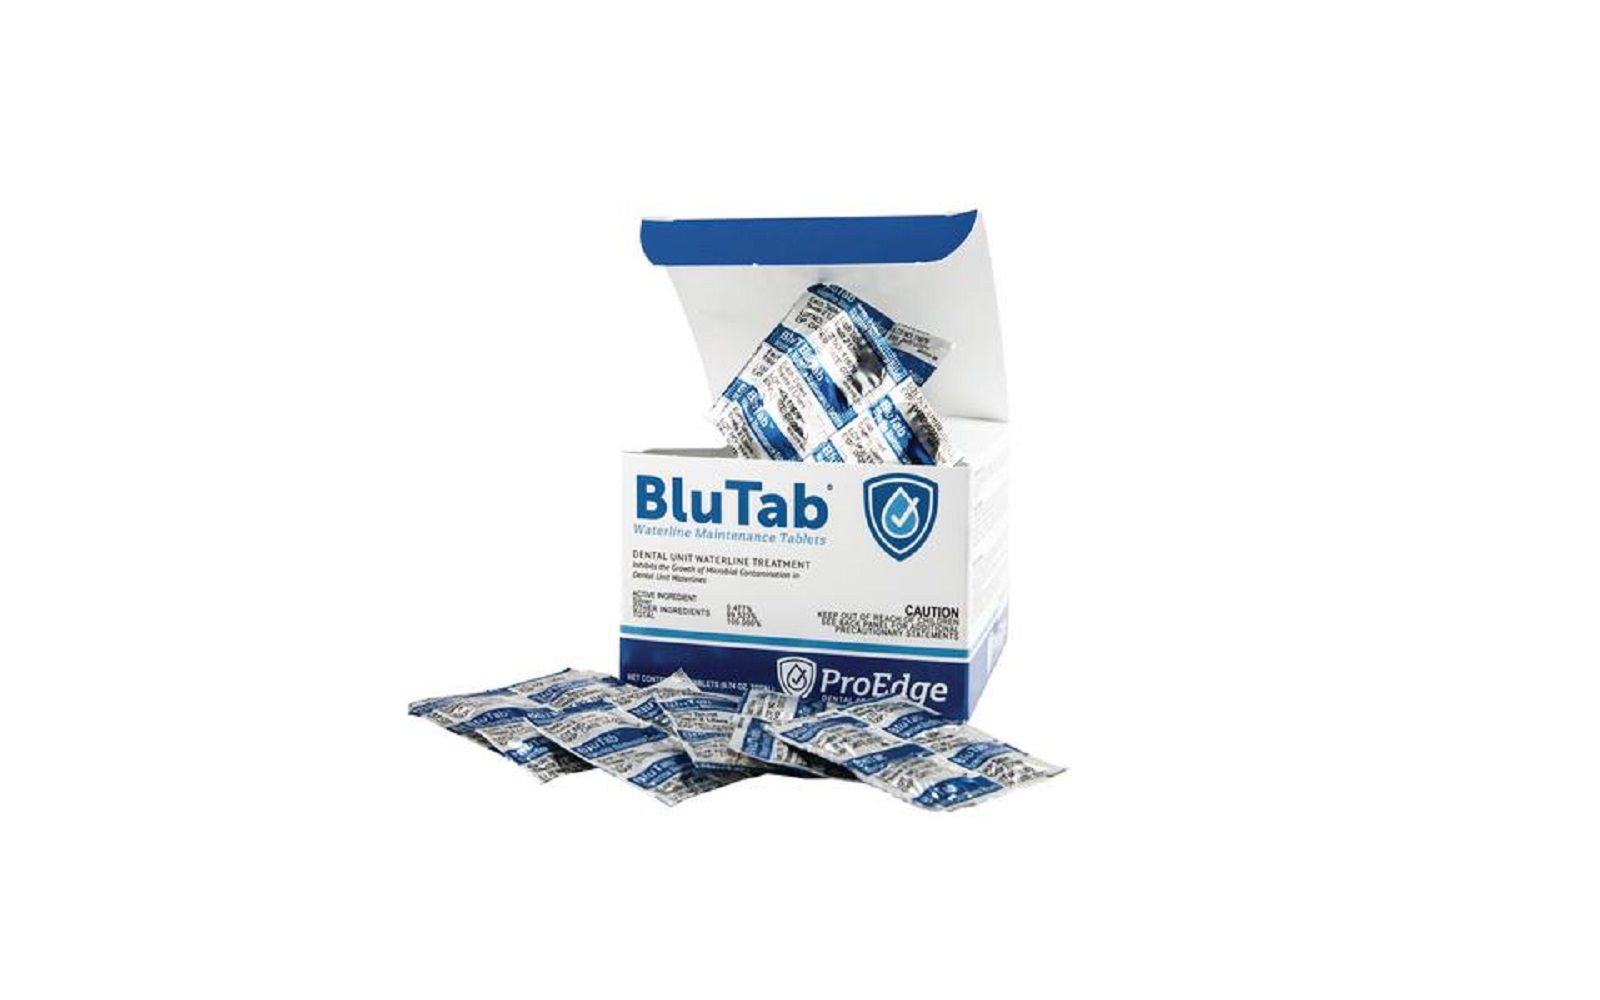 Blutab™ waterline tablets - treats 2 liter size bottles, 50 tablets/pkg